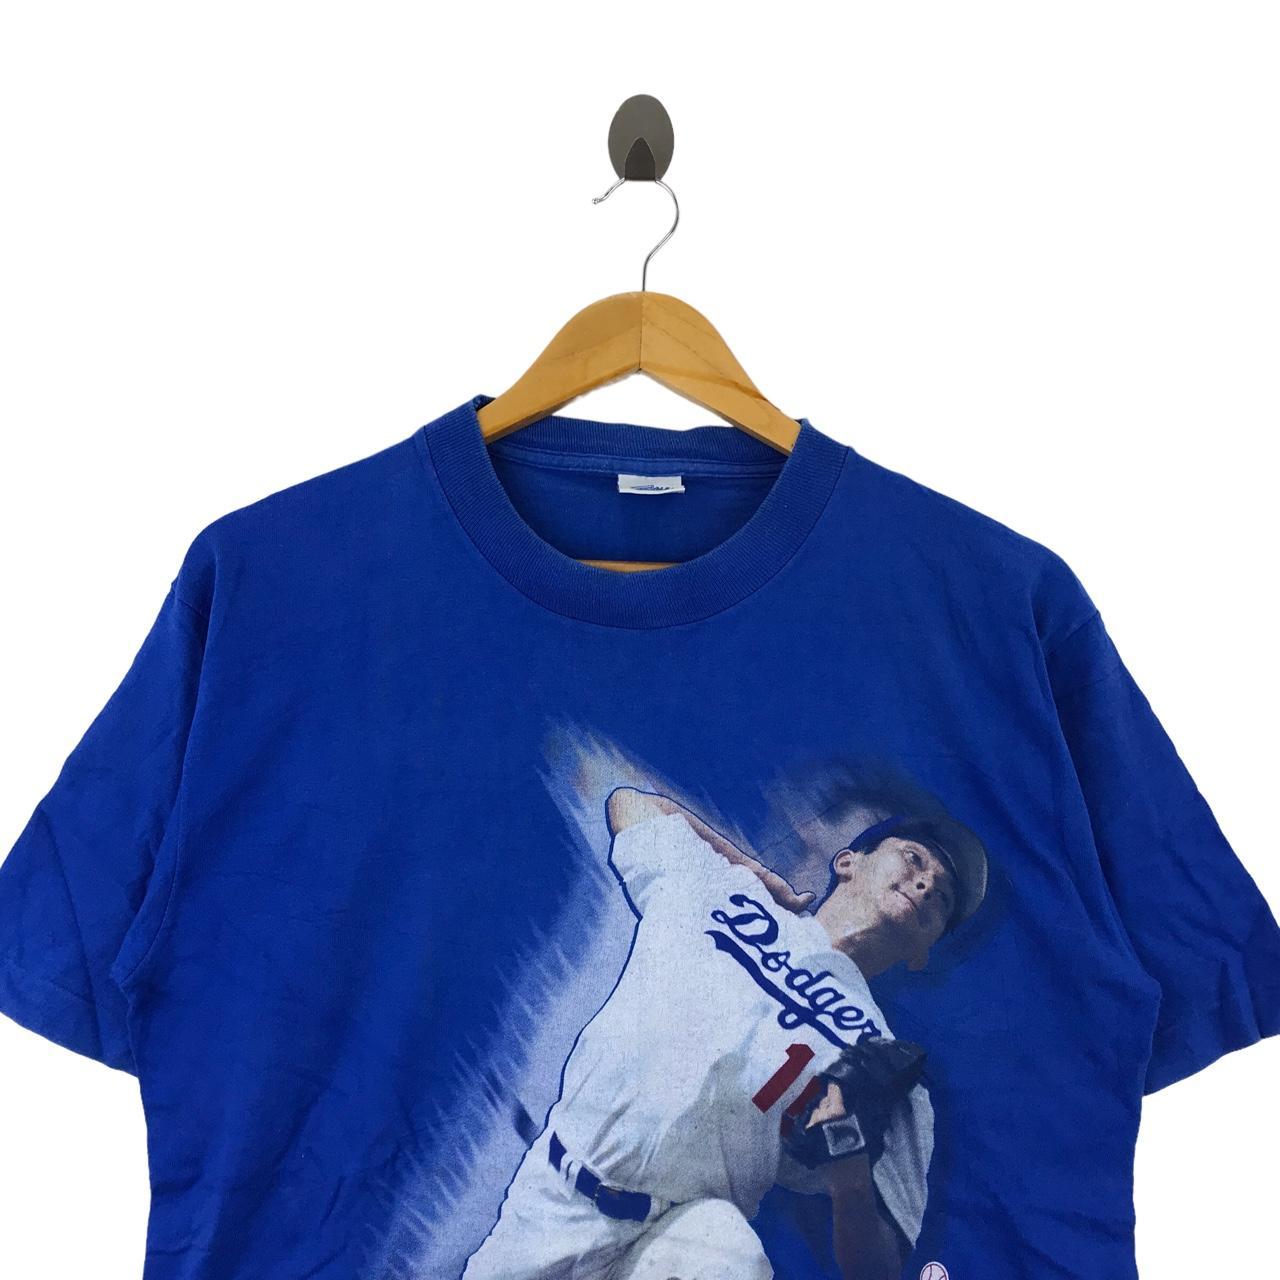 Vintage 1995 LA Dodgers Hideo Nomo Sweatshirt/crewneck/long 